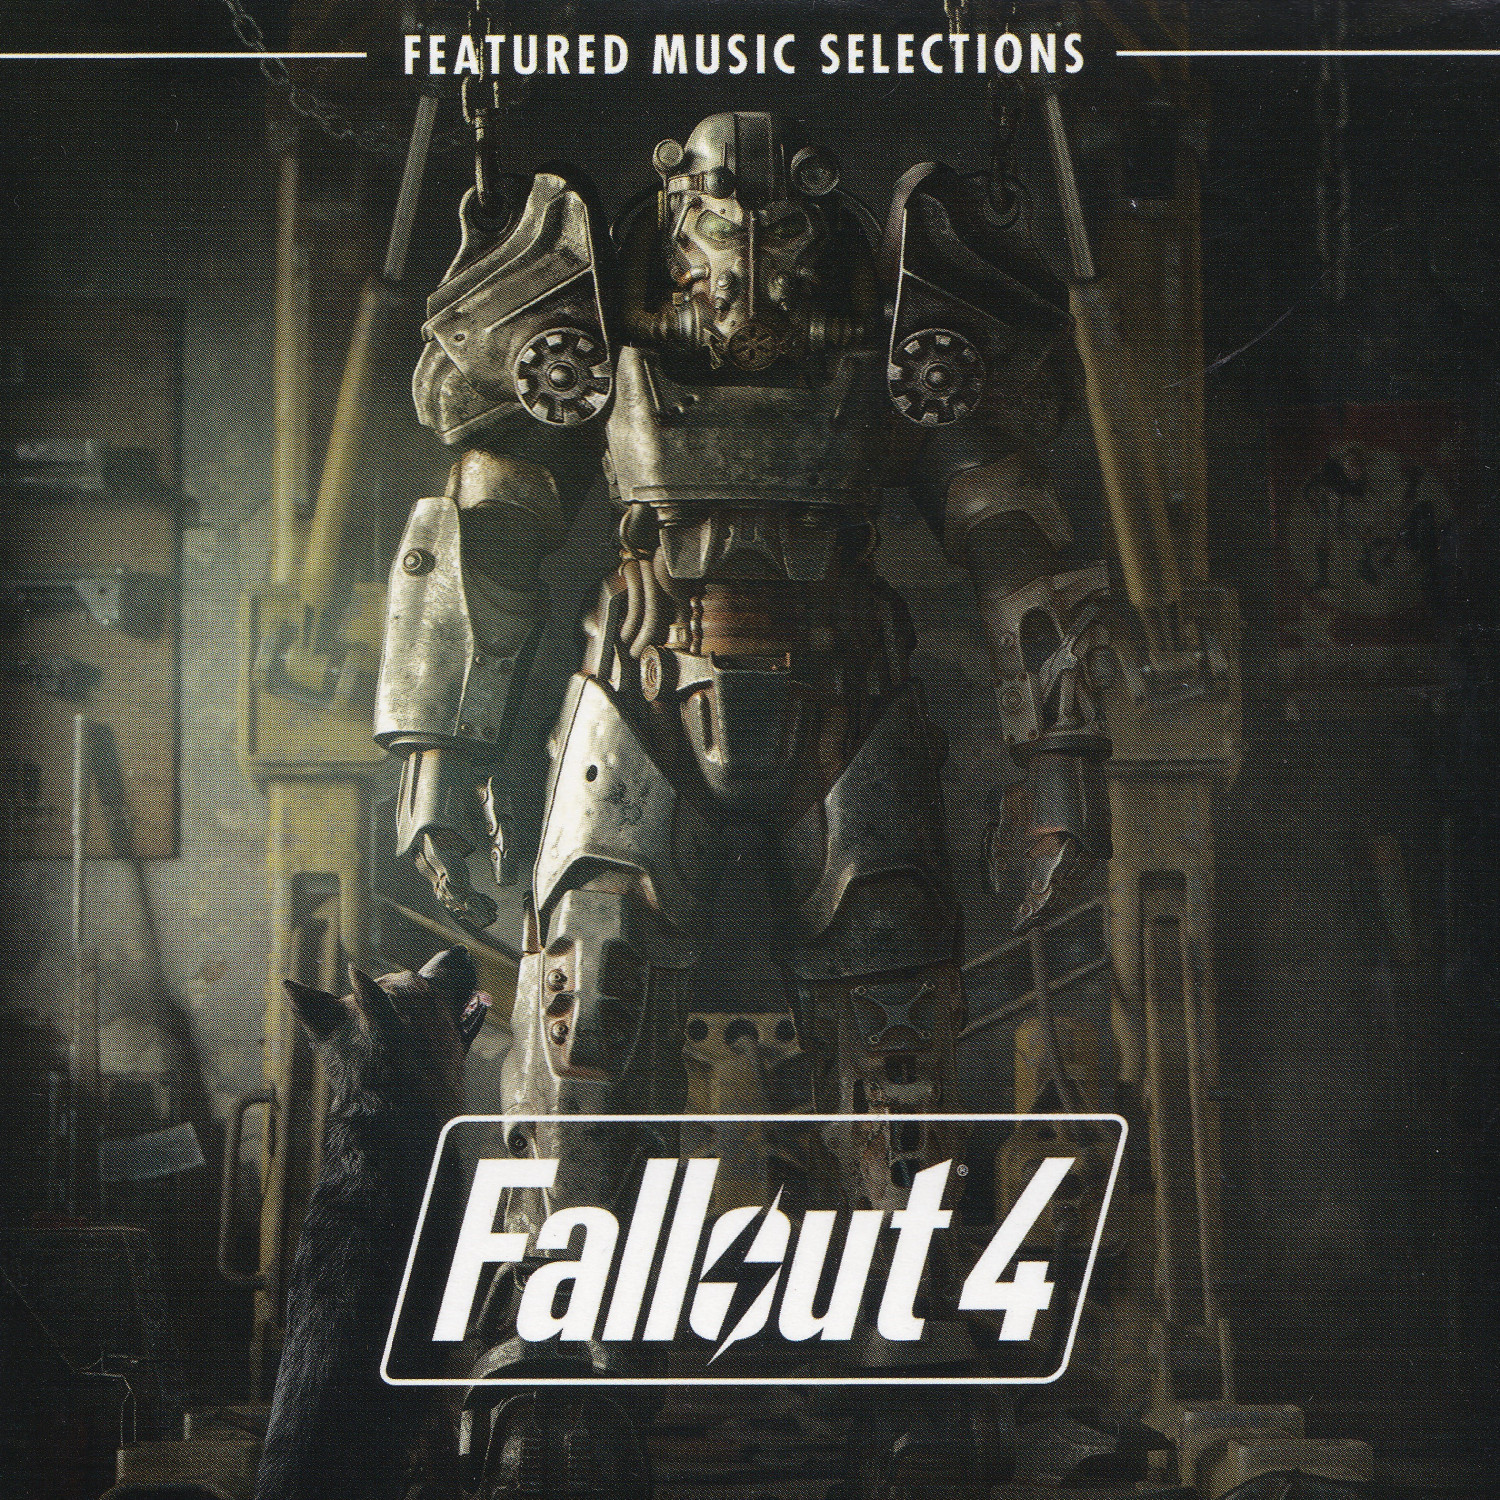 все об fallout 4 музыка из игры (120) фото